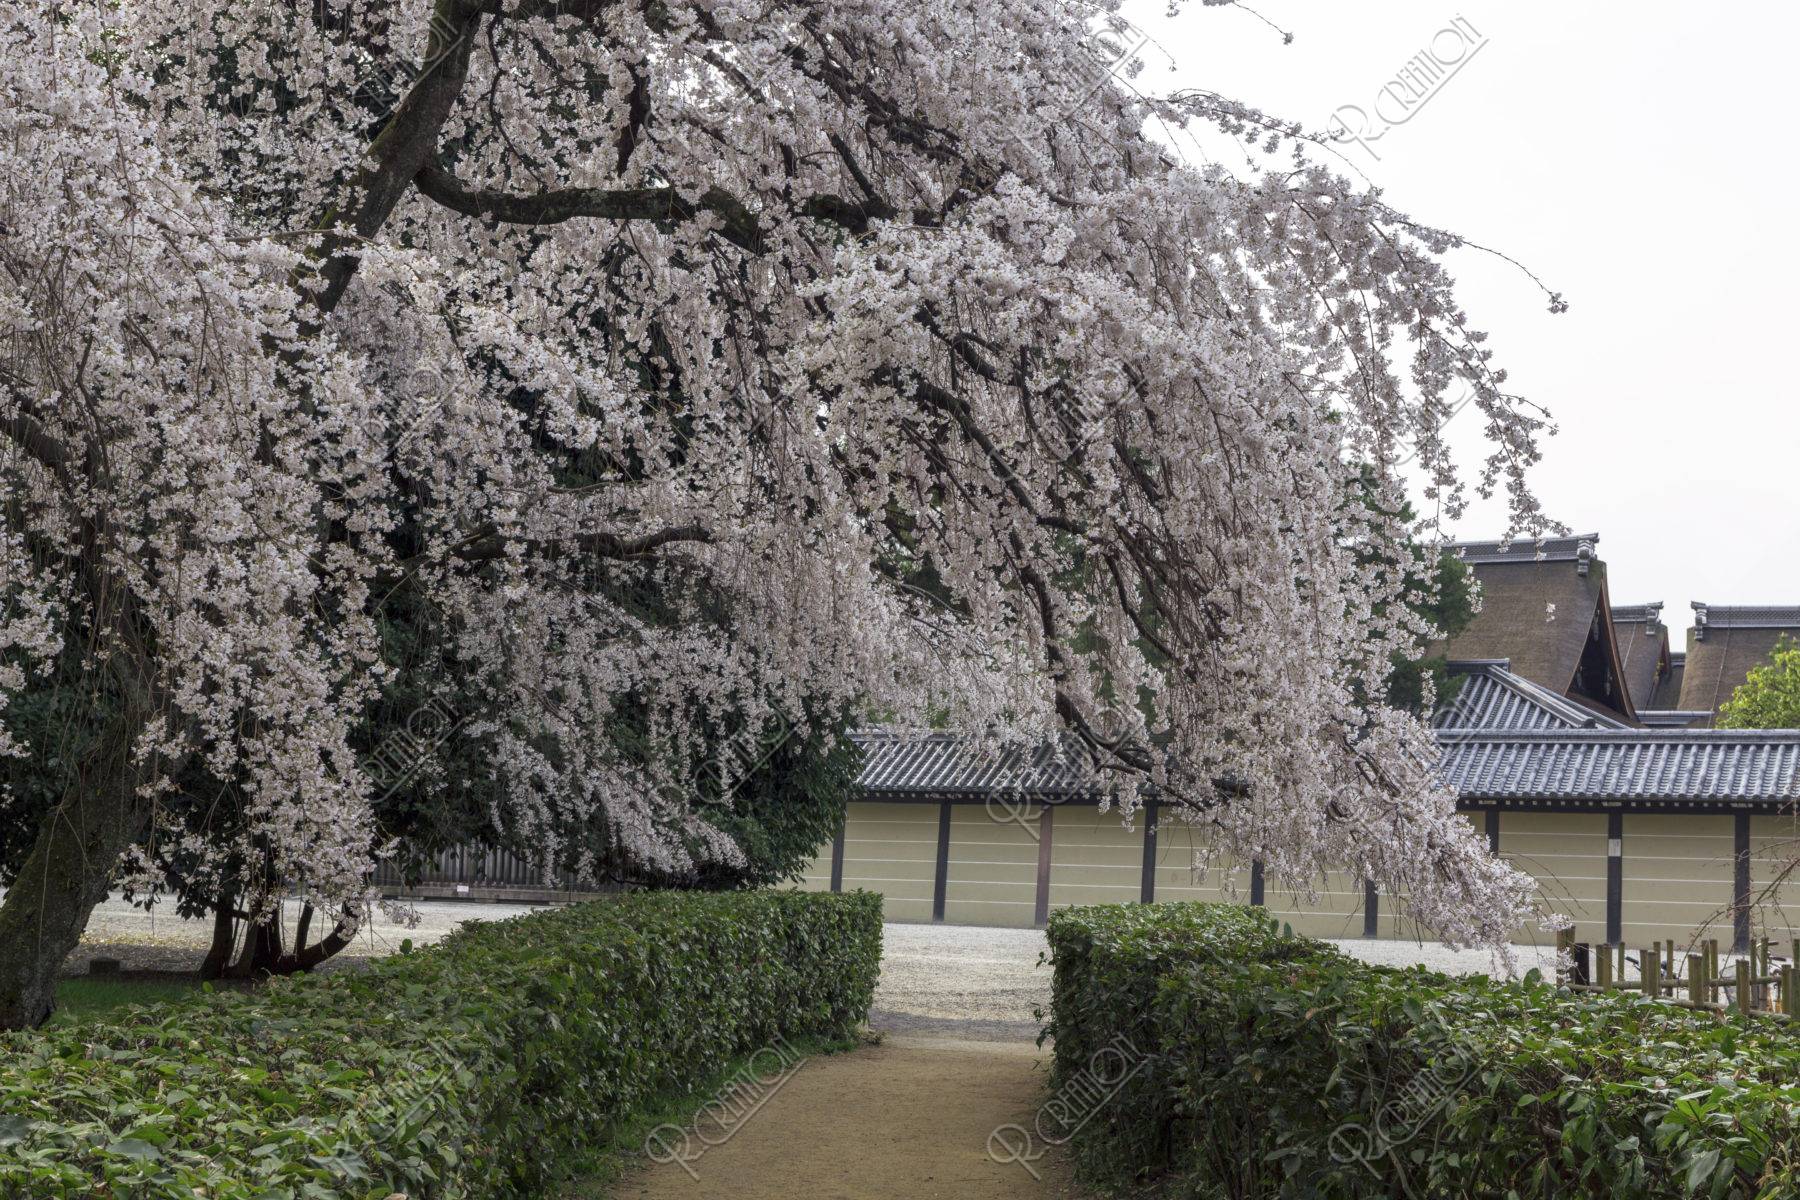 京都御苑 近衛邸跡の桜 ストックフォト アールクリエーション